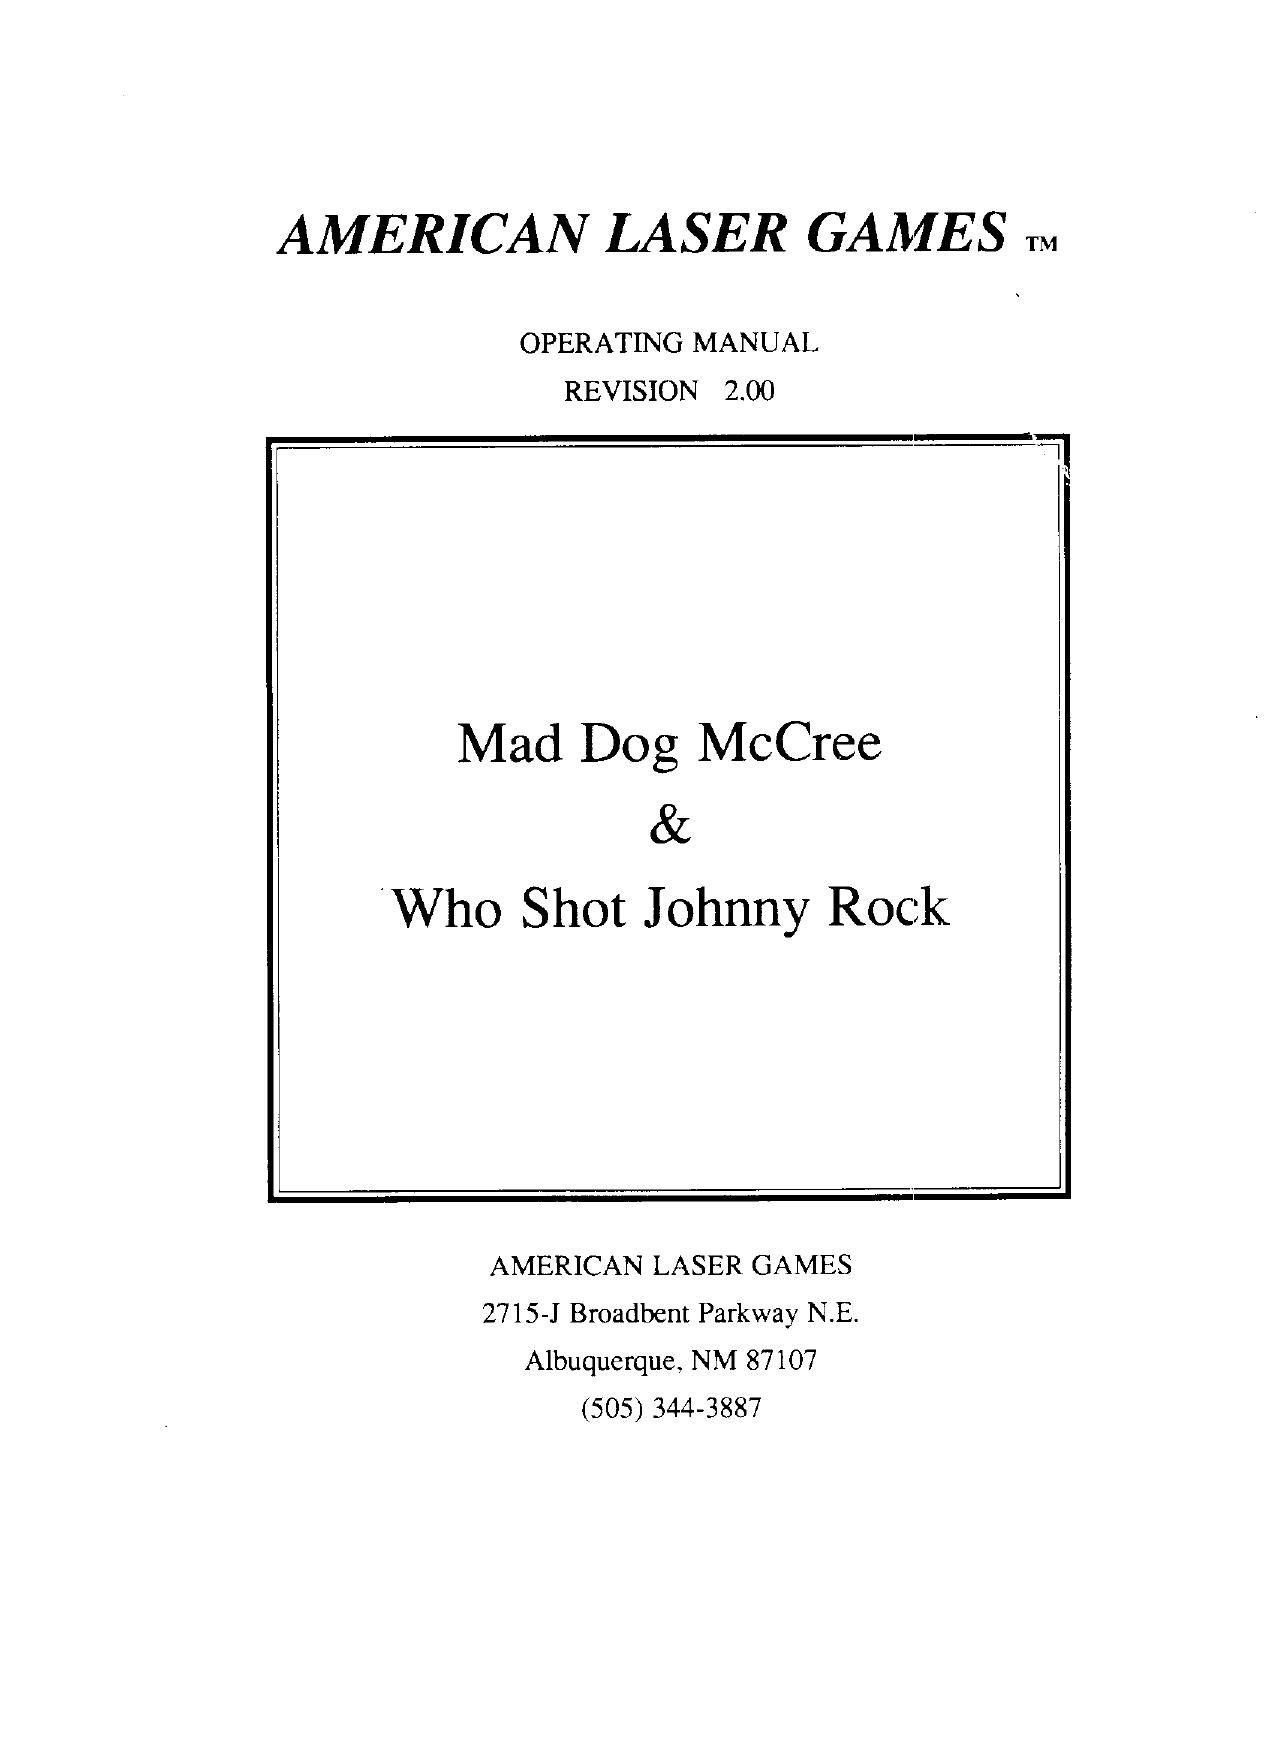 Mad Dog McCree & Who Shot Johhny Rock (Manual Rev 2) (U)